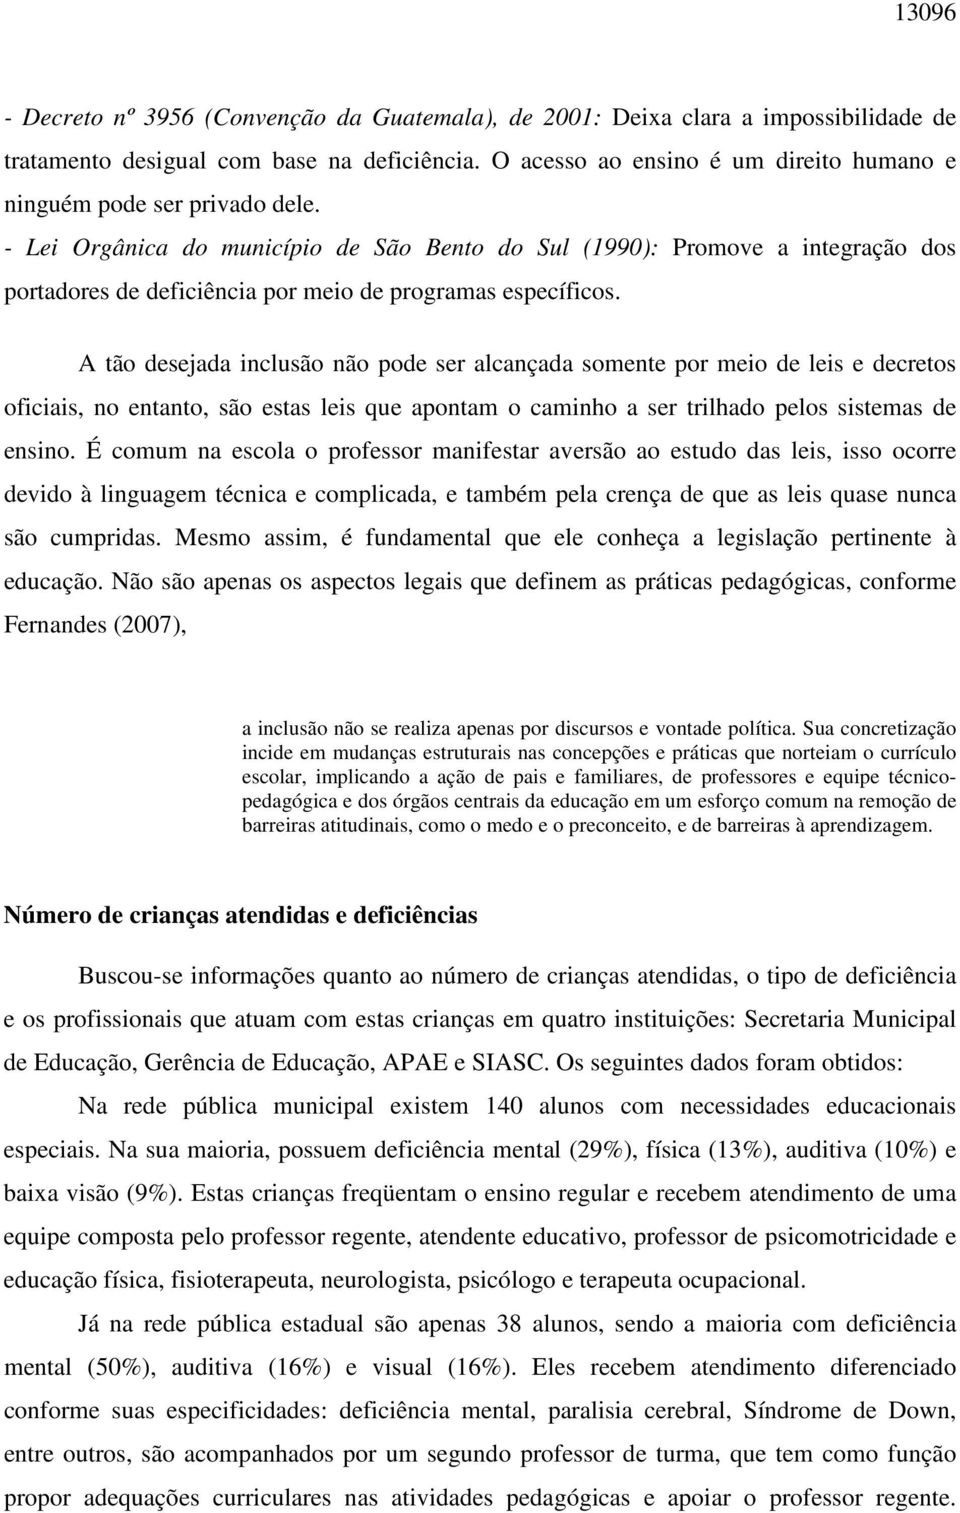 - Lei Orgânica do município de São Bento do Sul (1990): Promove a integração dos portadores de deficiência por meio de programas específicos.